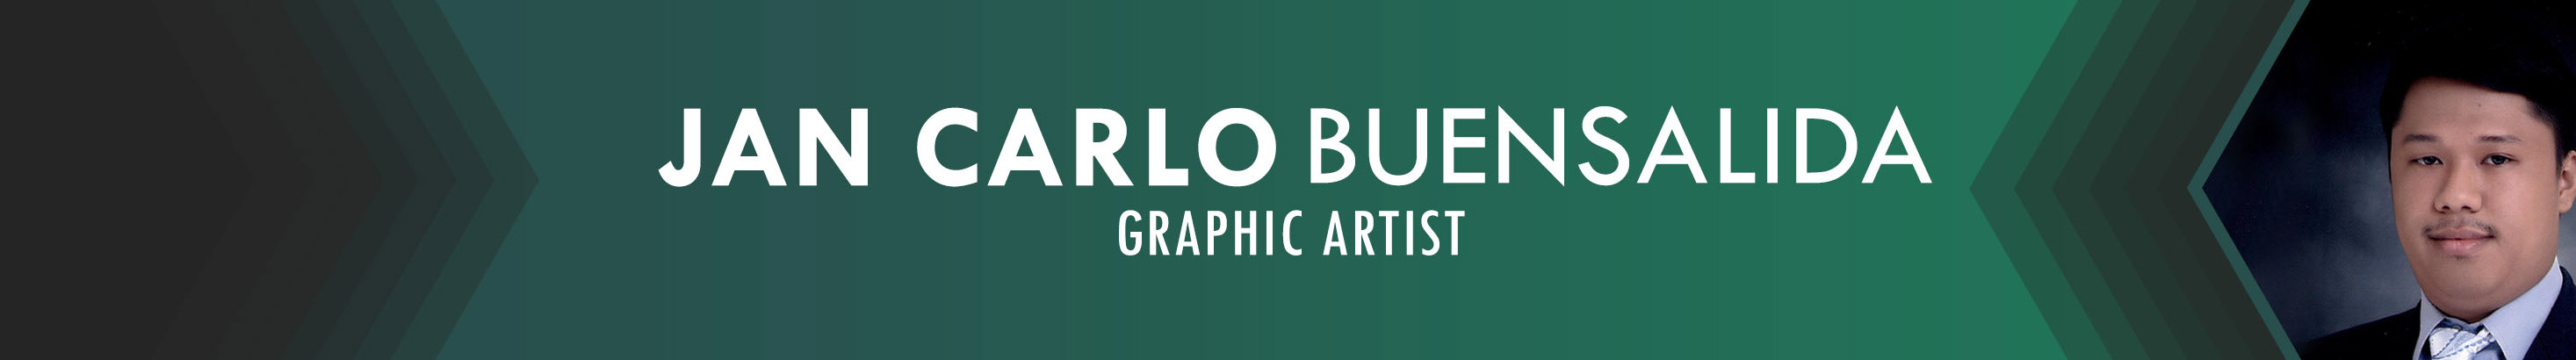 Jan Carlo Buensalida's profile banner